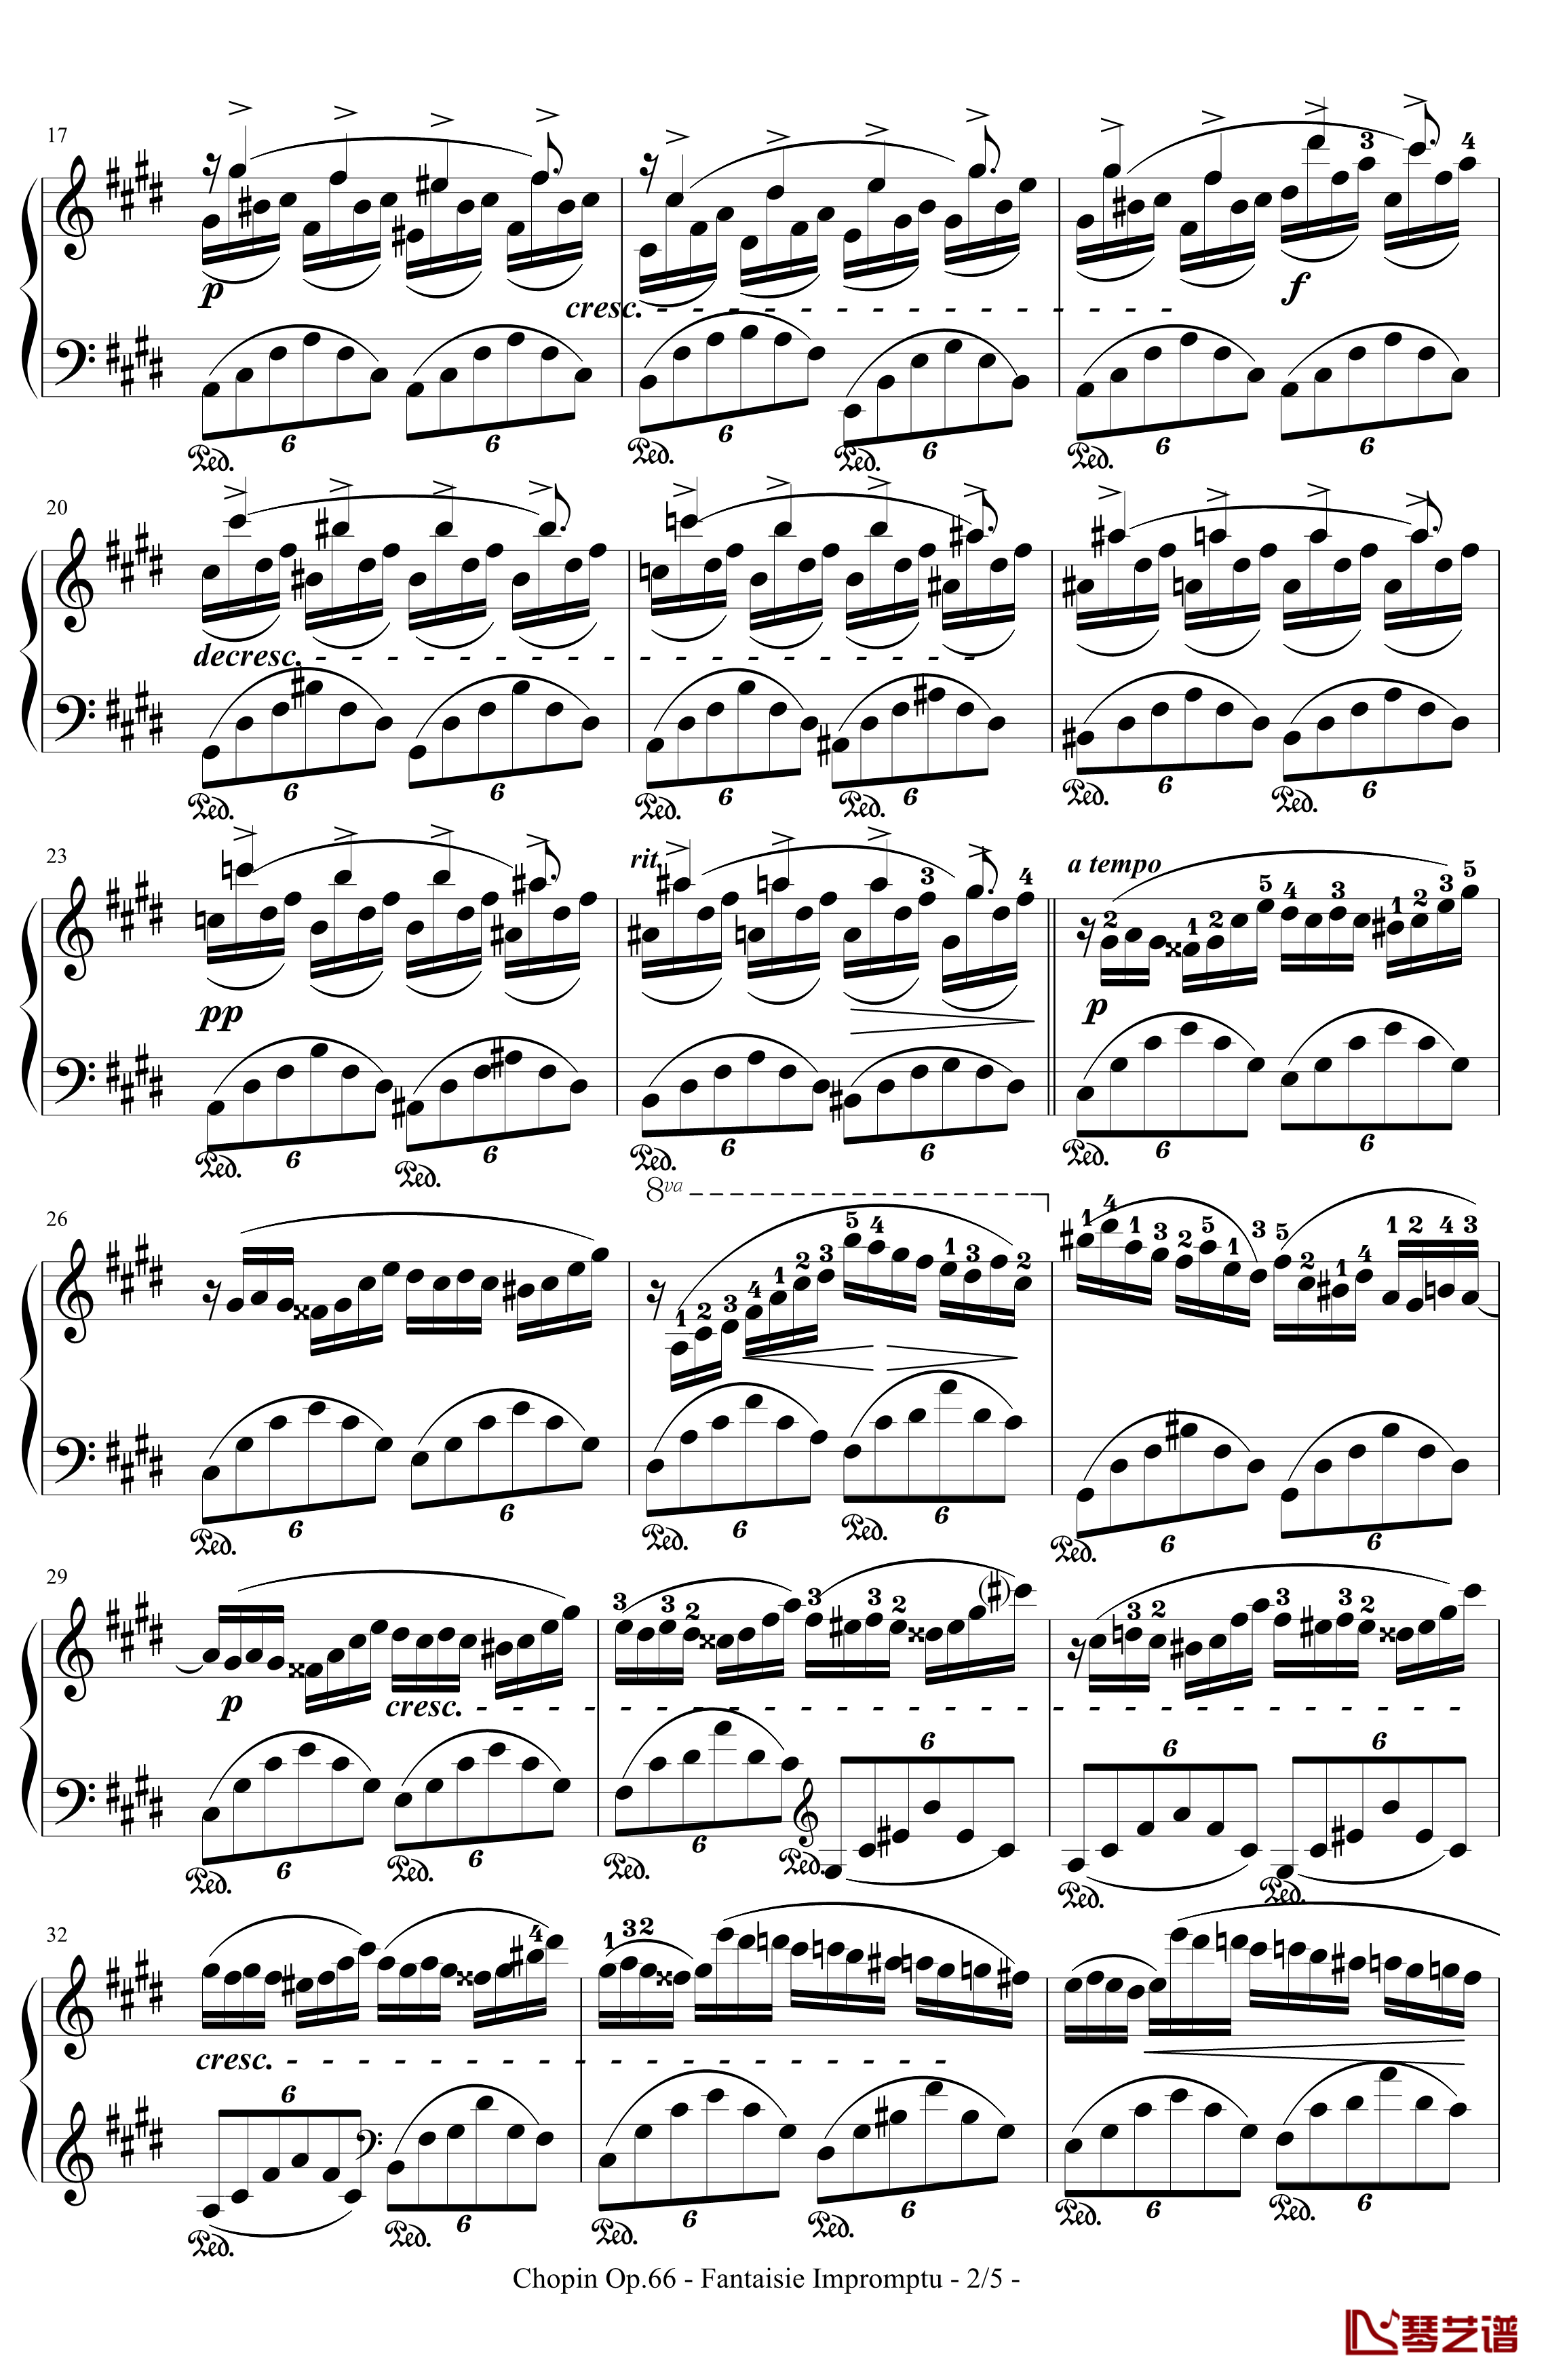 即兴幻想曲钢琴谱-带指法-Op.66-肖邦-chopin2